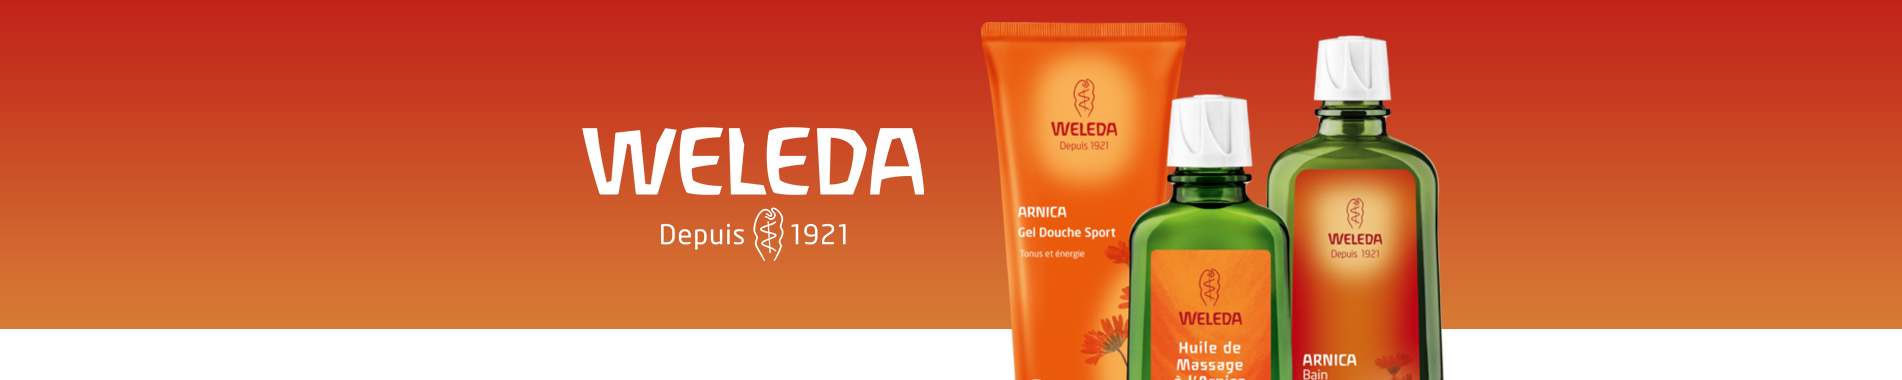 l'huile de massage à l'arnica weleda est utilisée en préparation et  récupération sportives